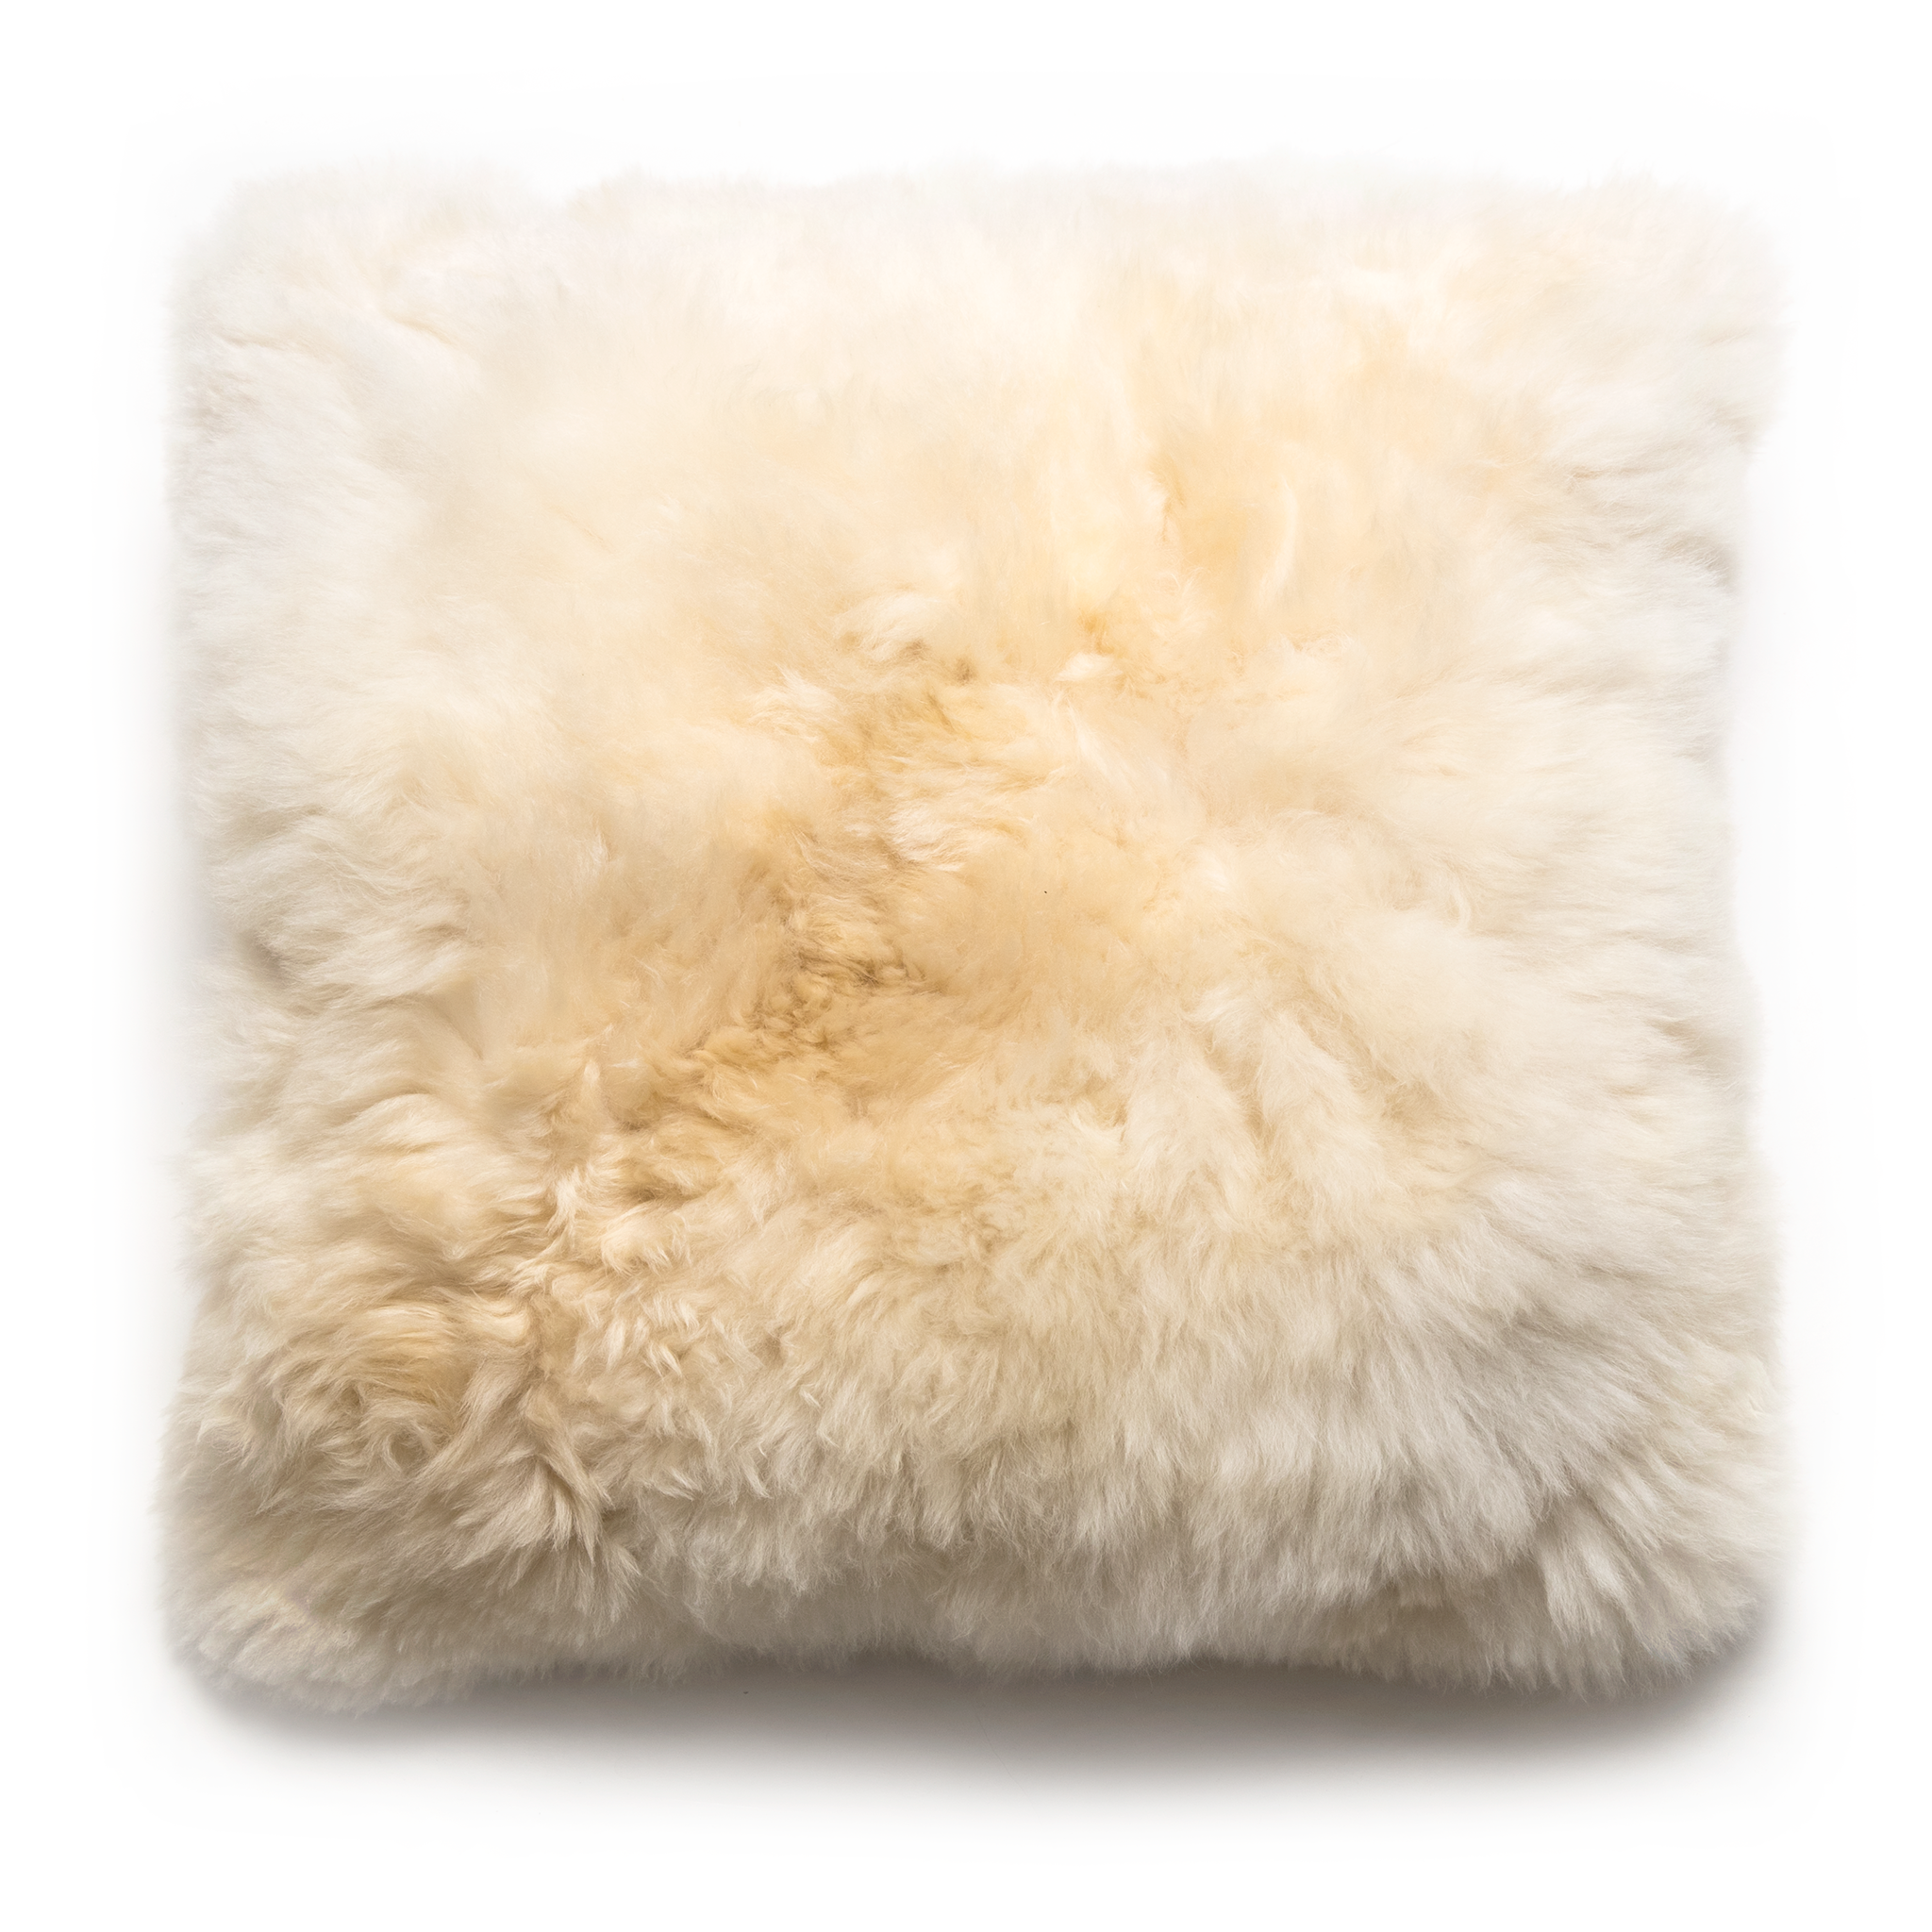 geest fort Trekken Crema Alpaca Pillow – Intiearth